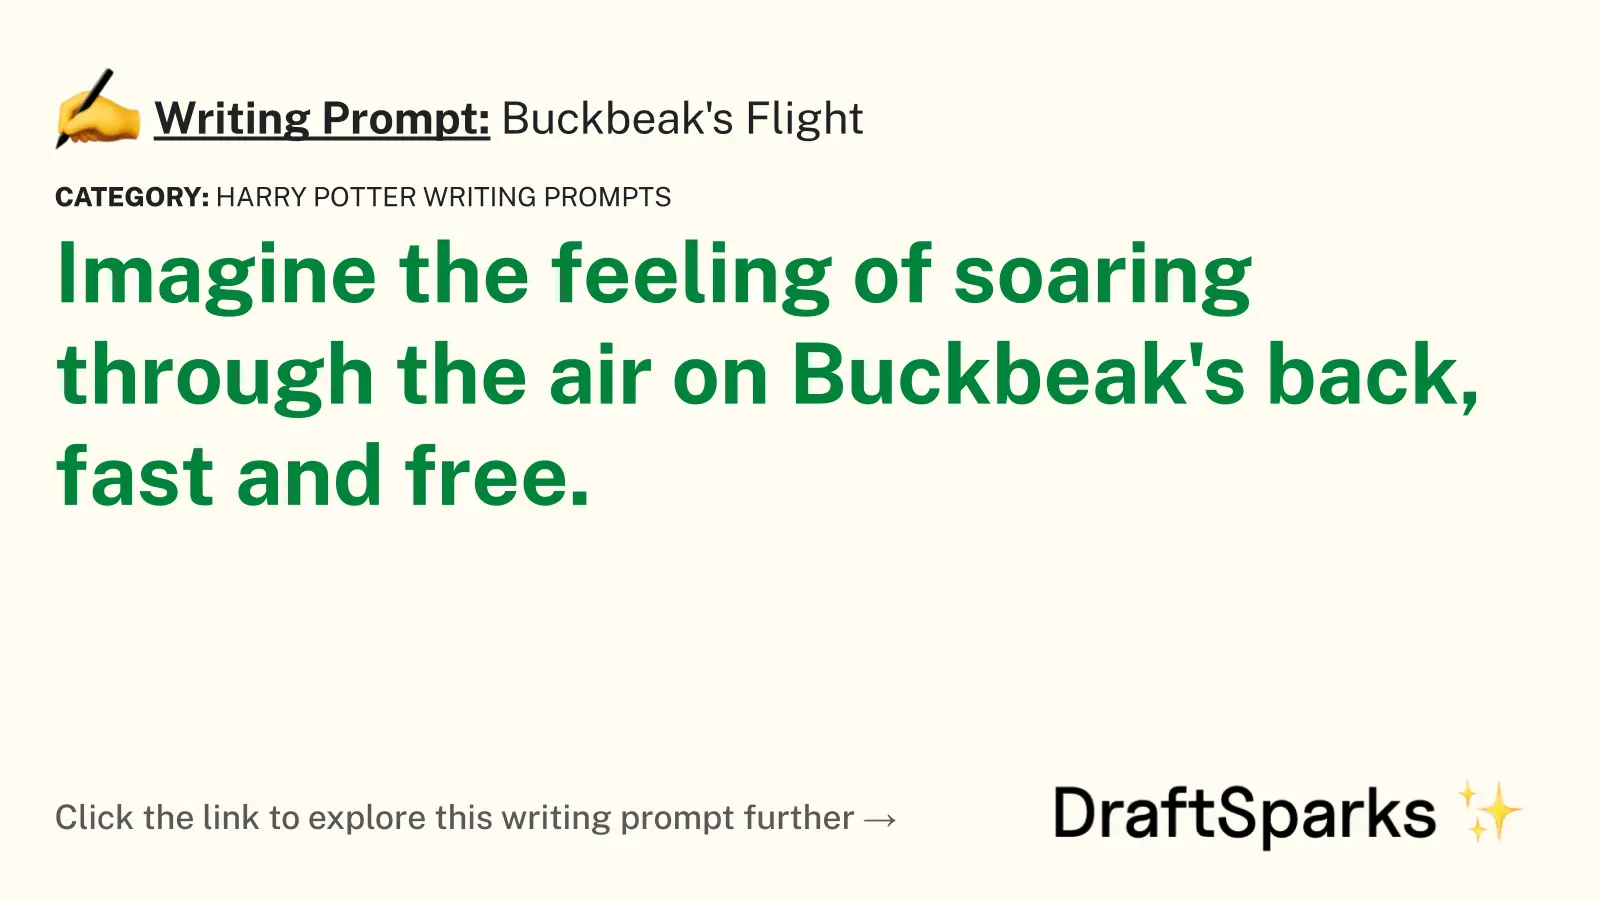 Buckbeak’s Flight